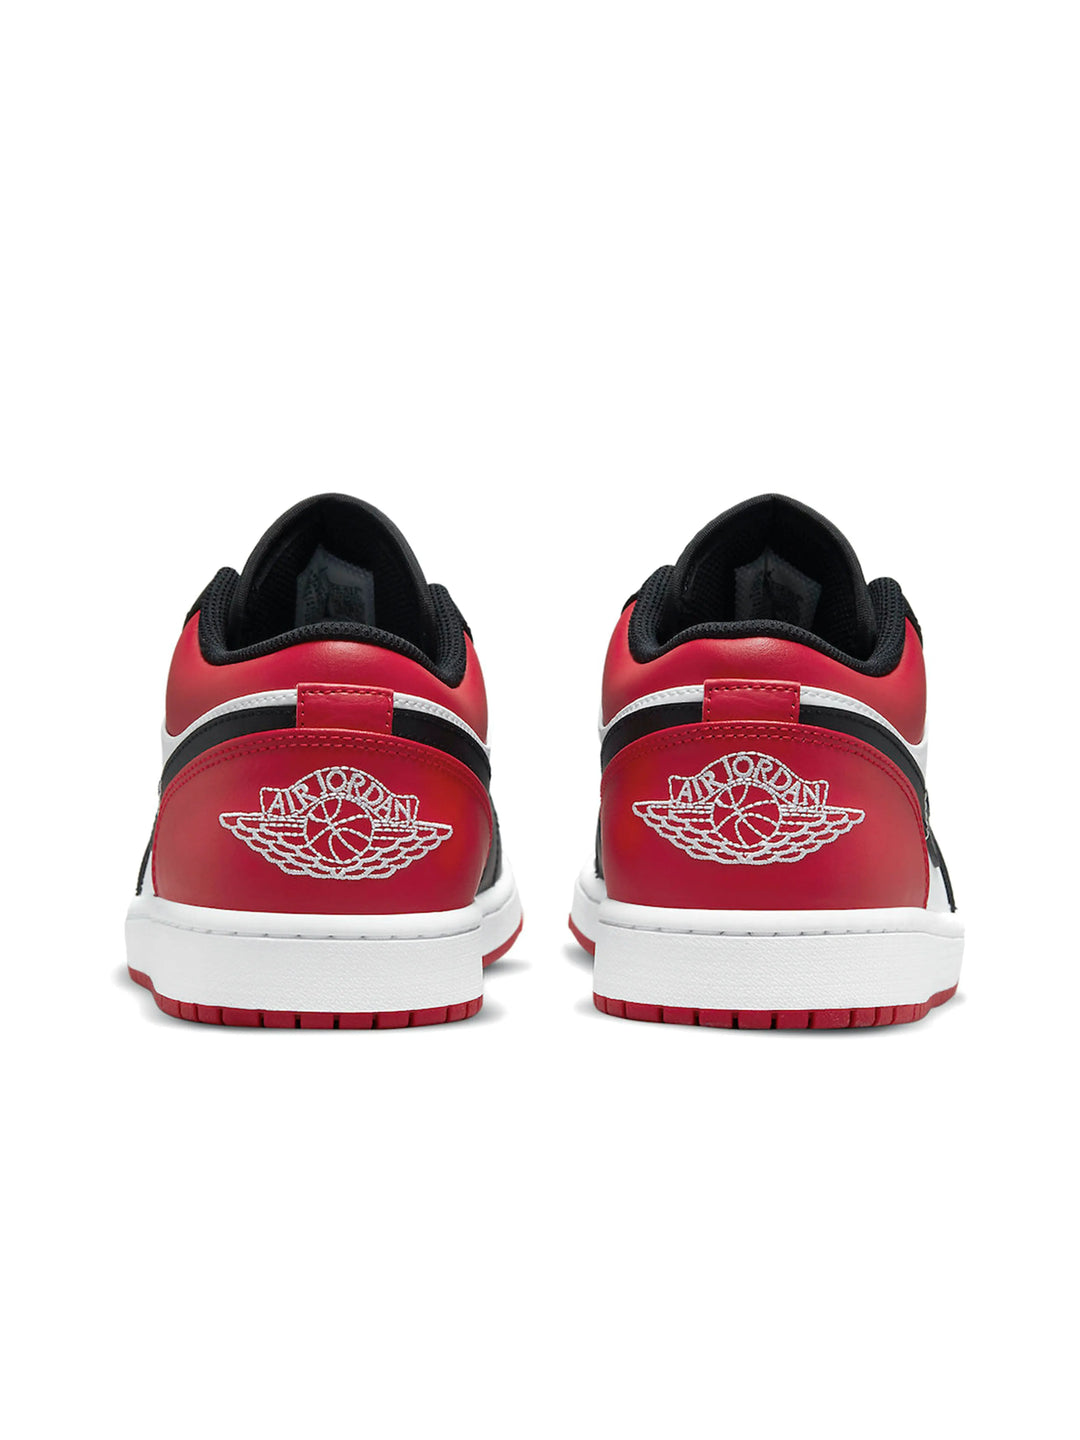 Nike Air Jordan 1 Low Bred Toe (GS) Prior